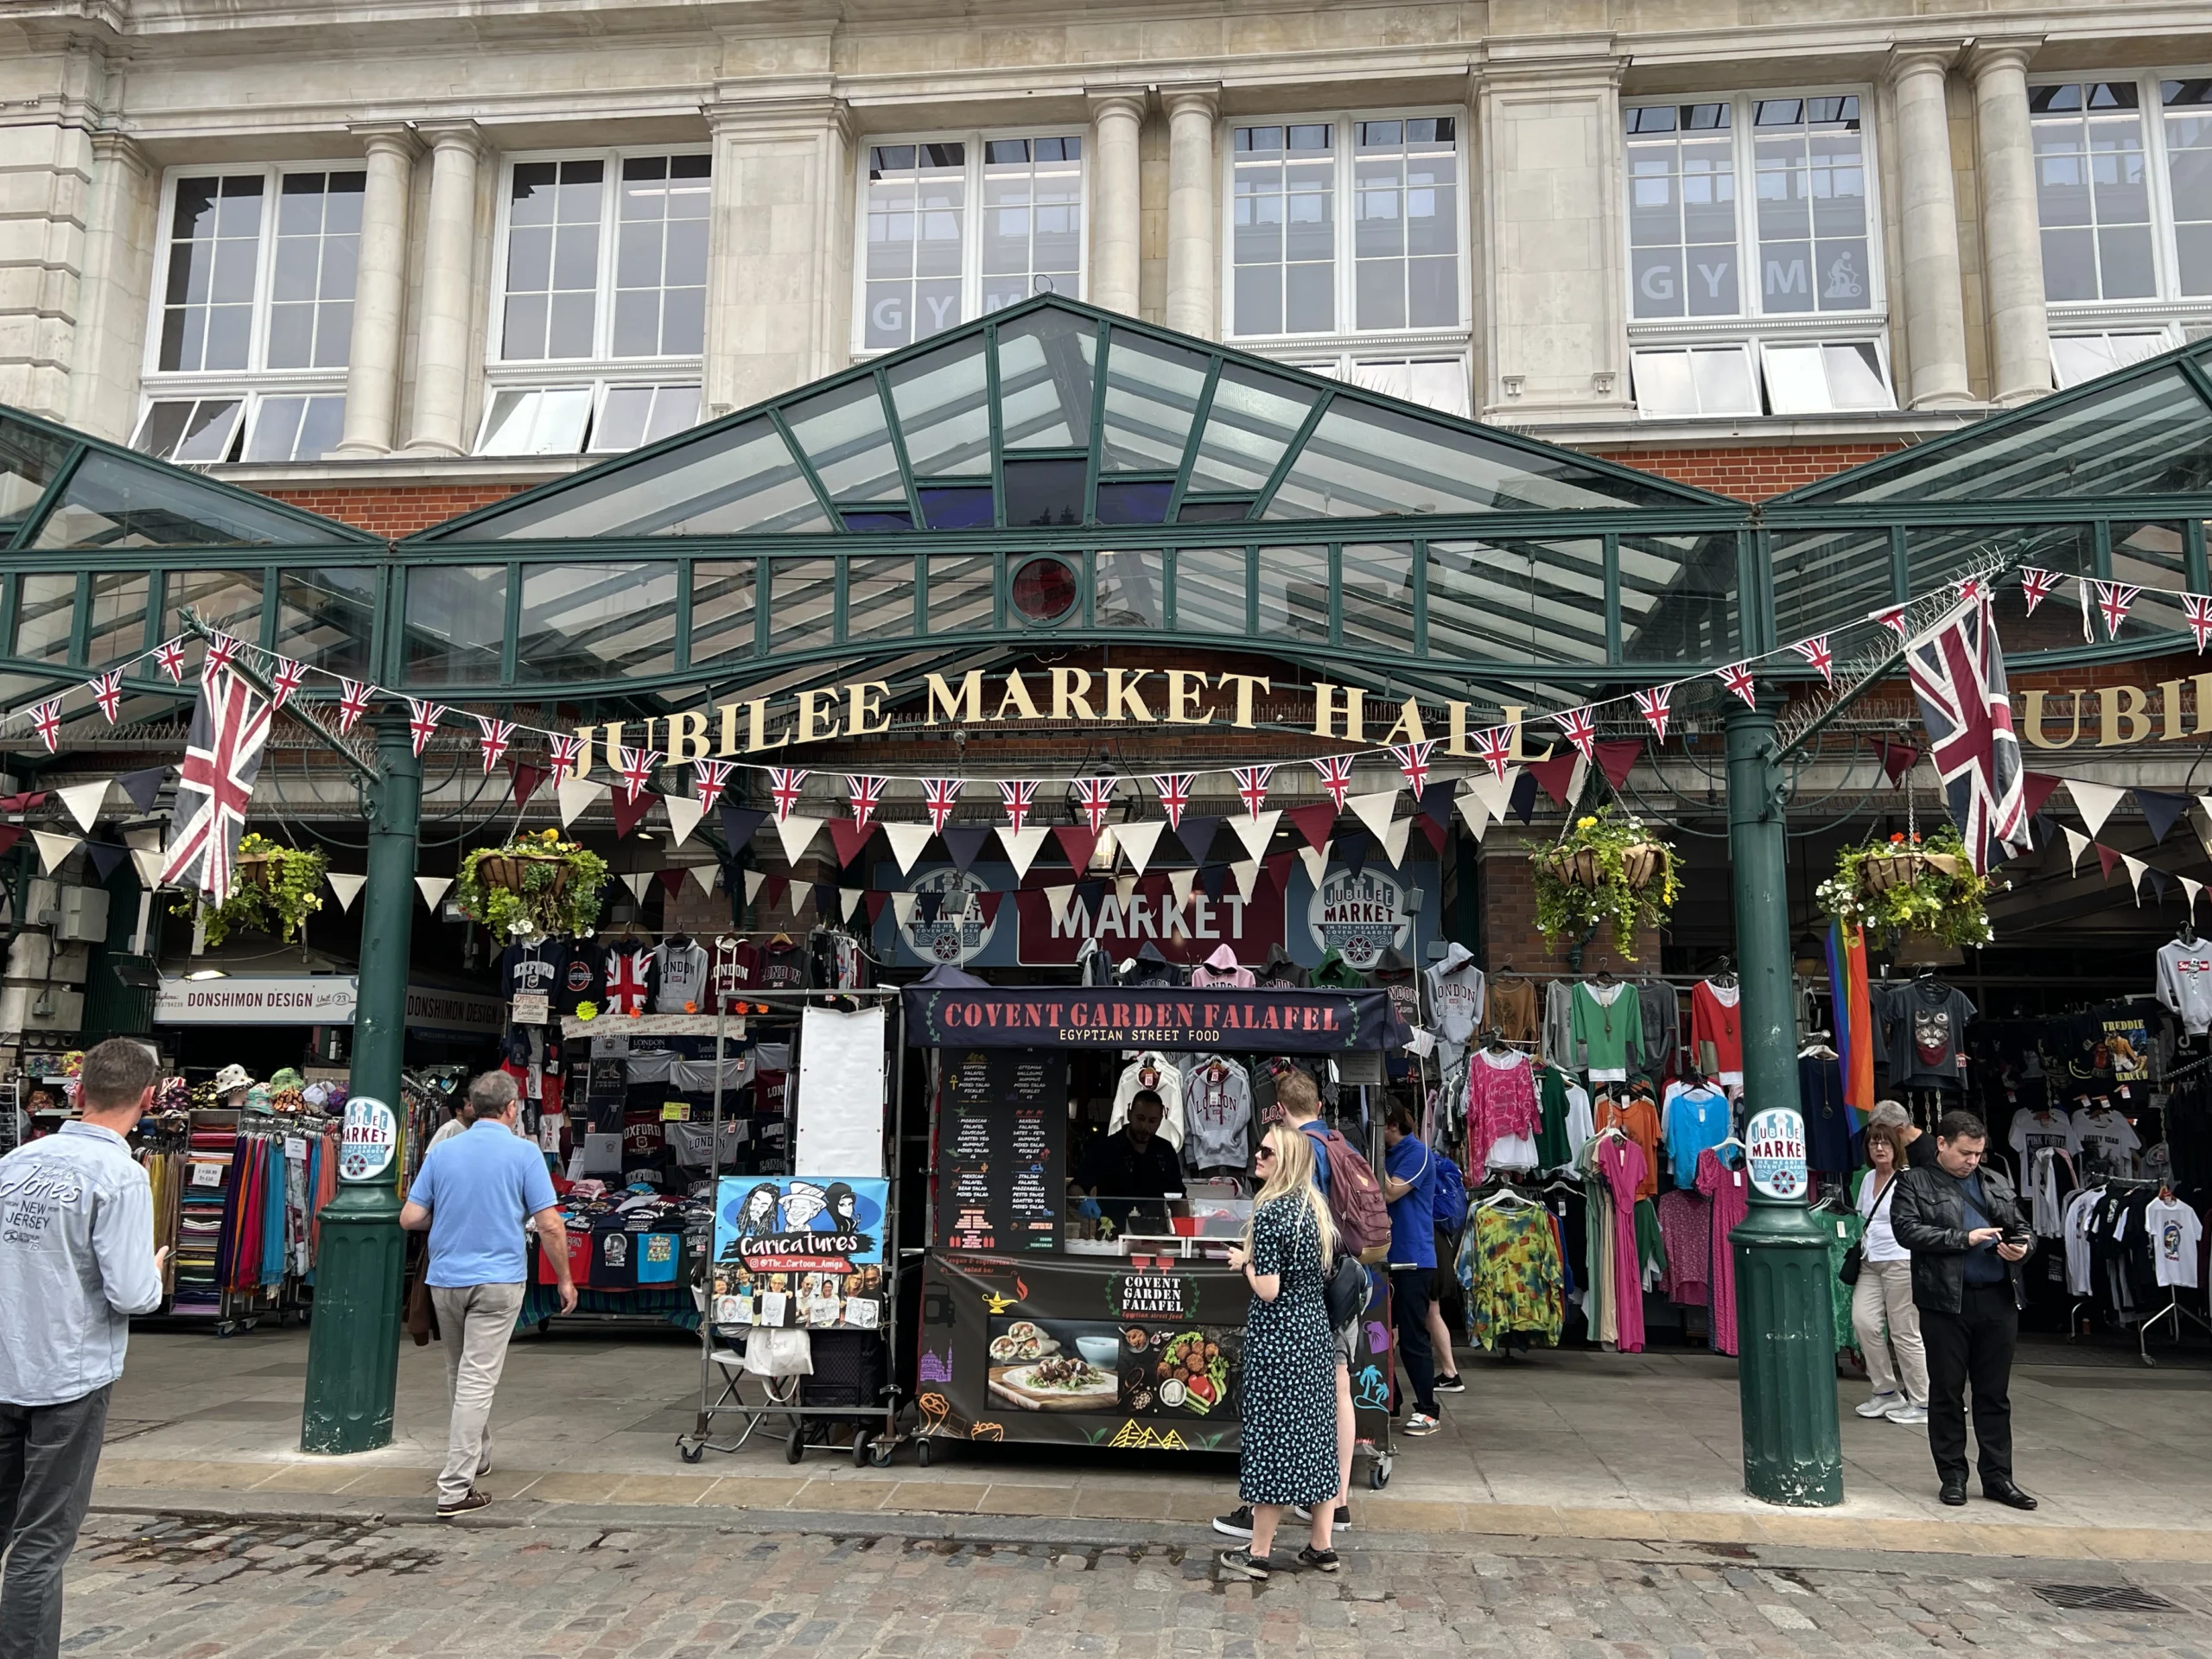 Jubilee Market